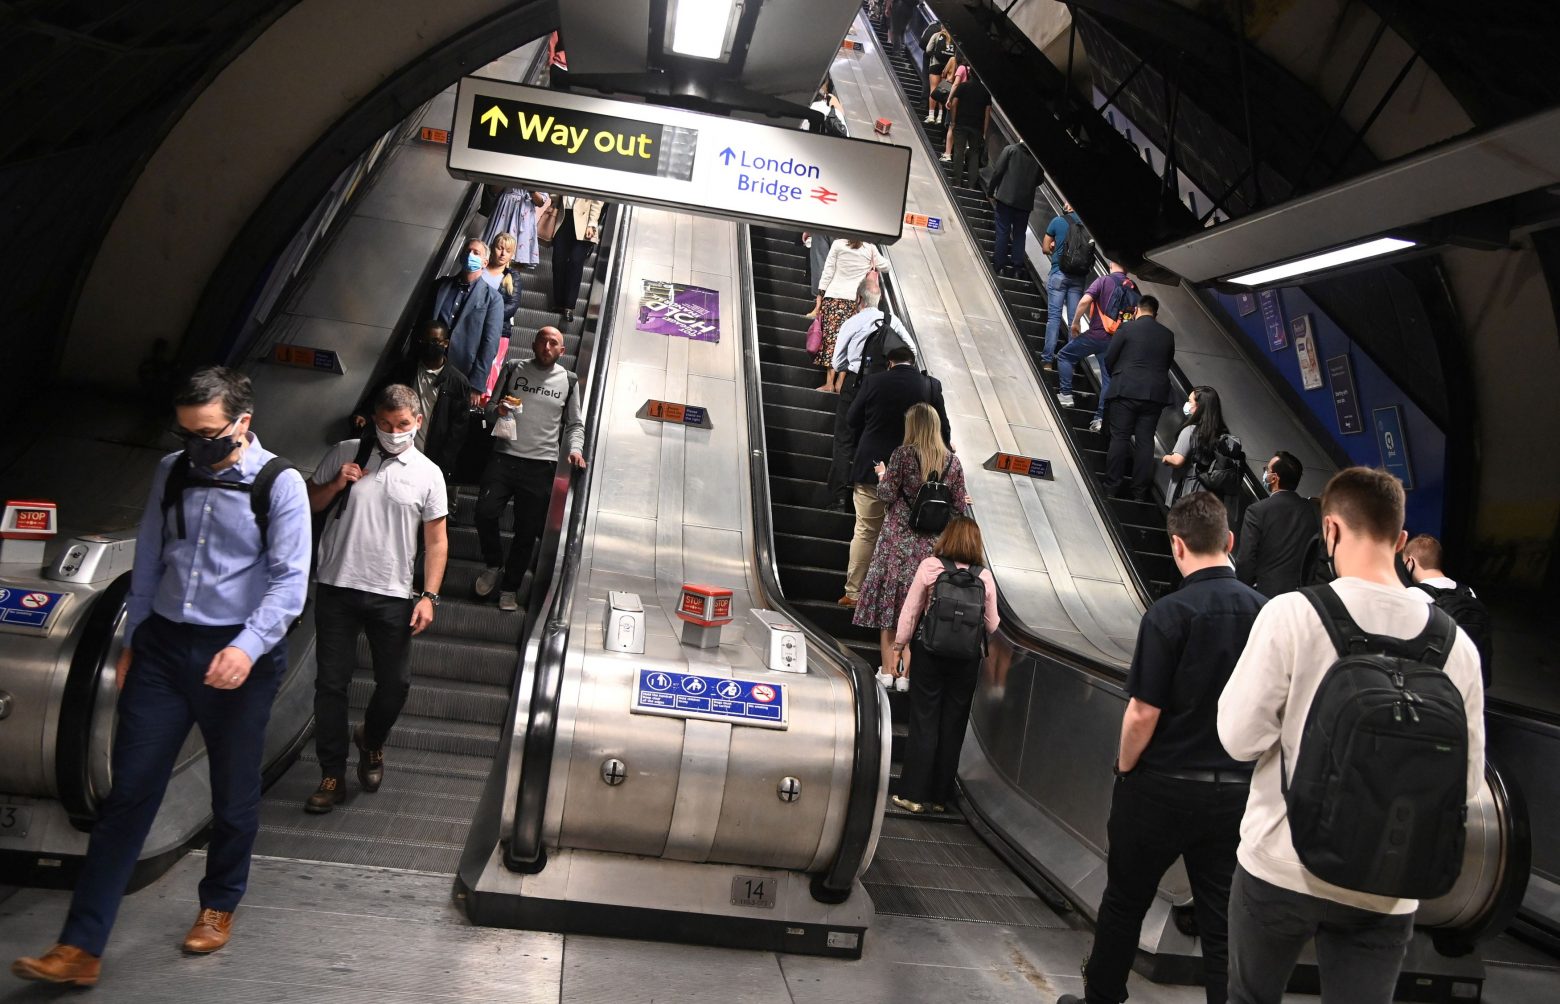 Κοροναϊός - Οι Λονδρέζοι αποφεύγουν να κρατηθούν από την κουπαστή και πέφτουν στις σκάλες του μετρό